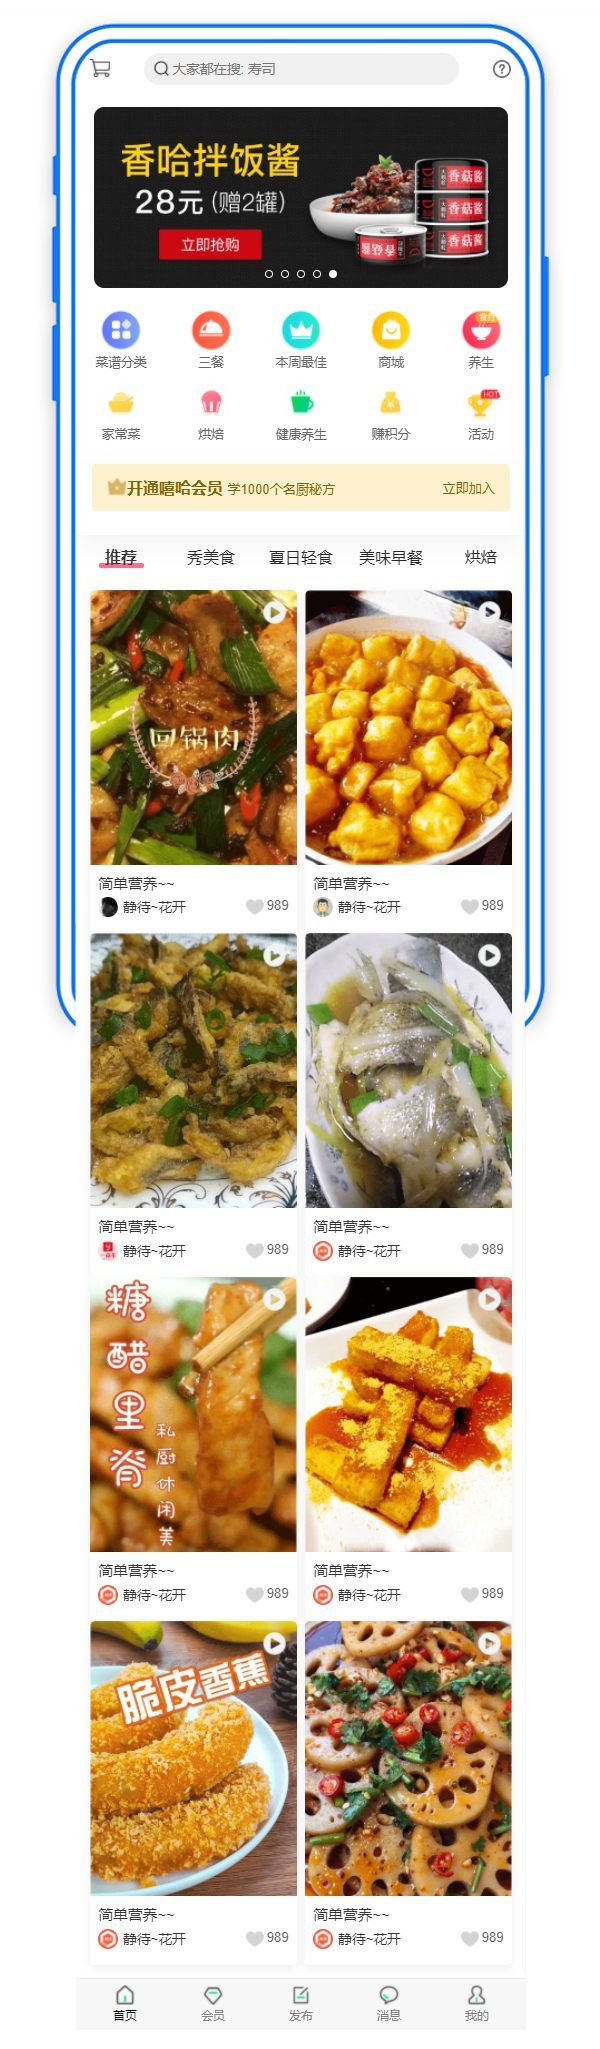 移动美食应用主题手机页面模板